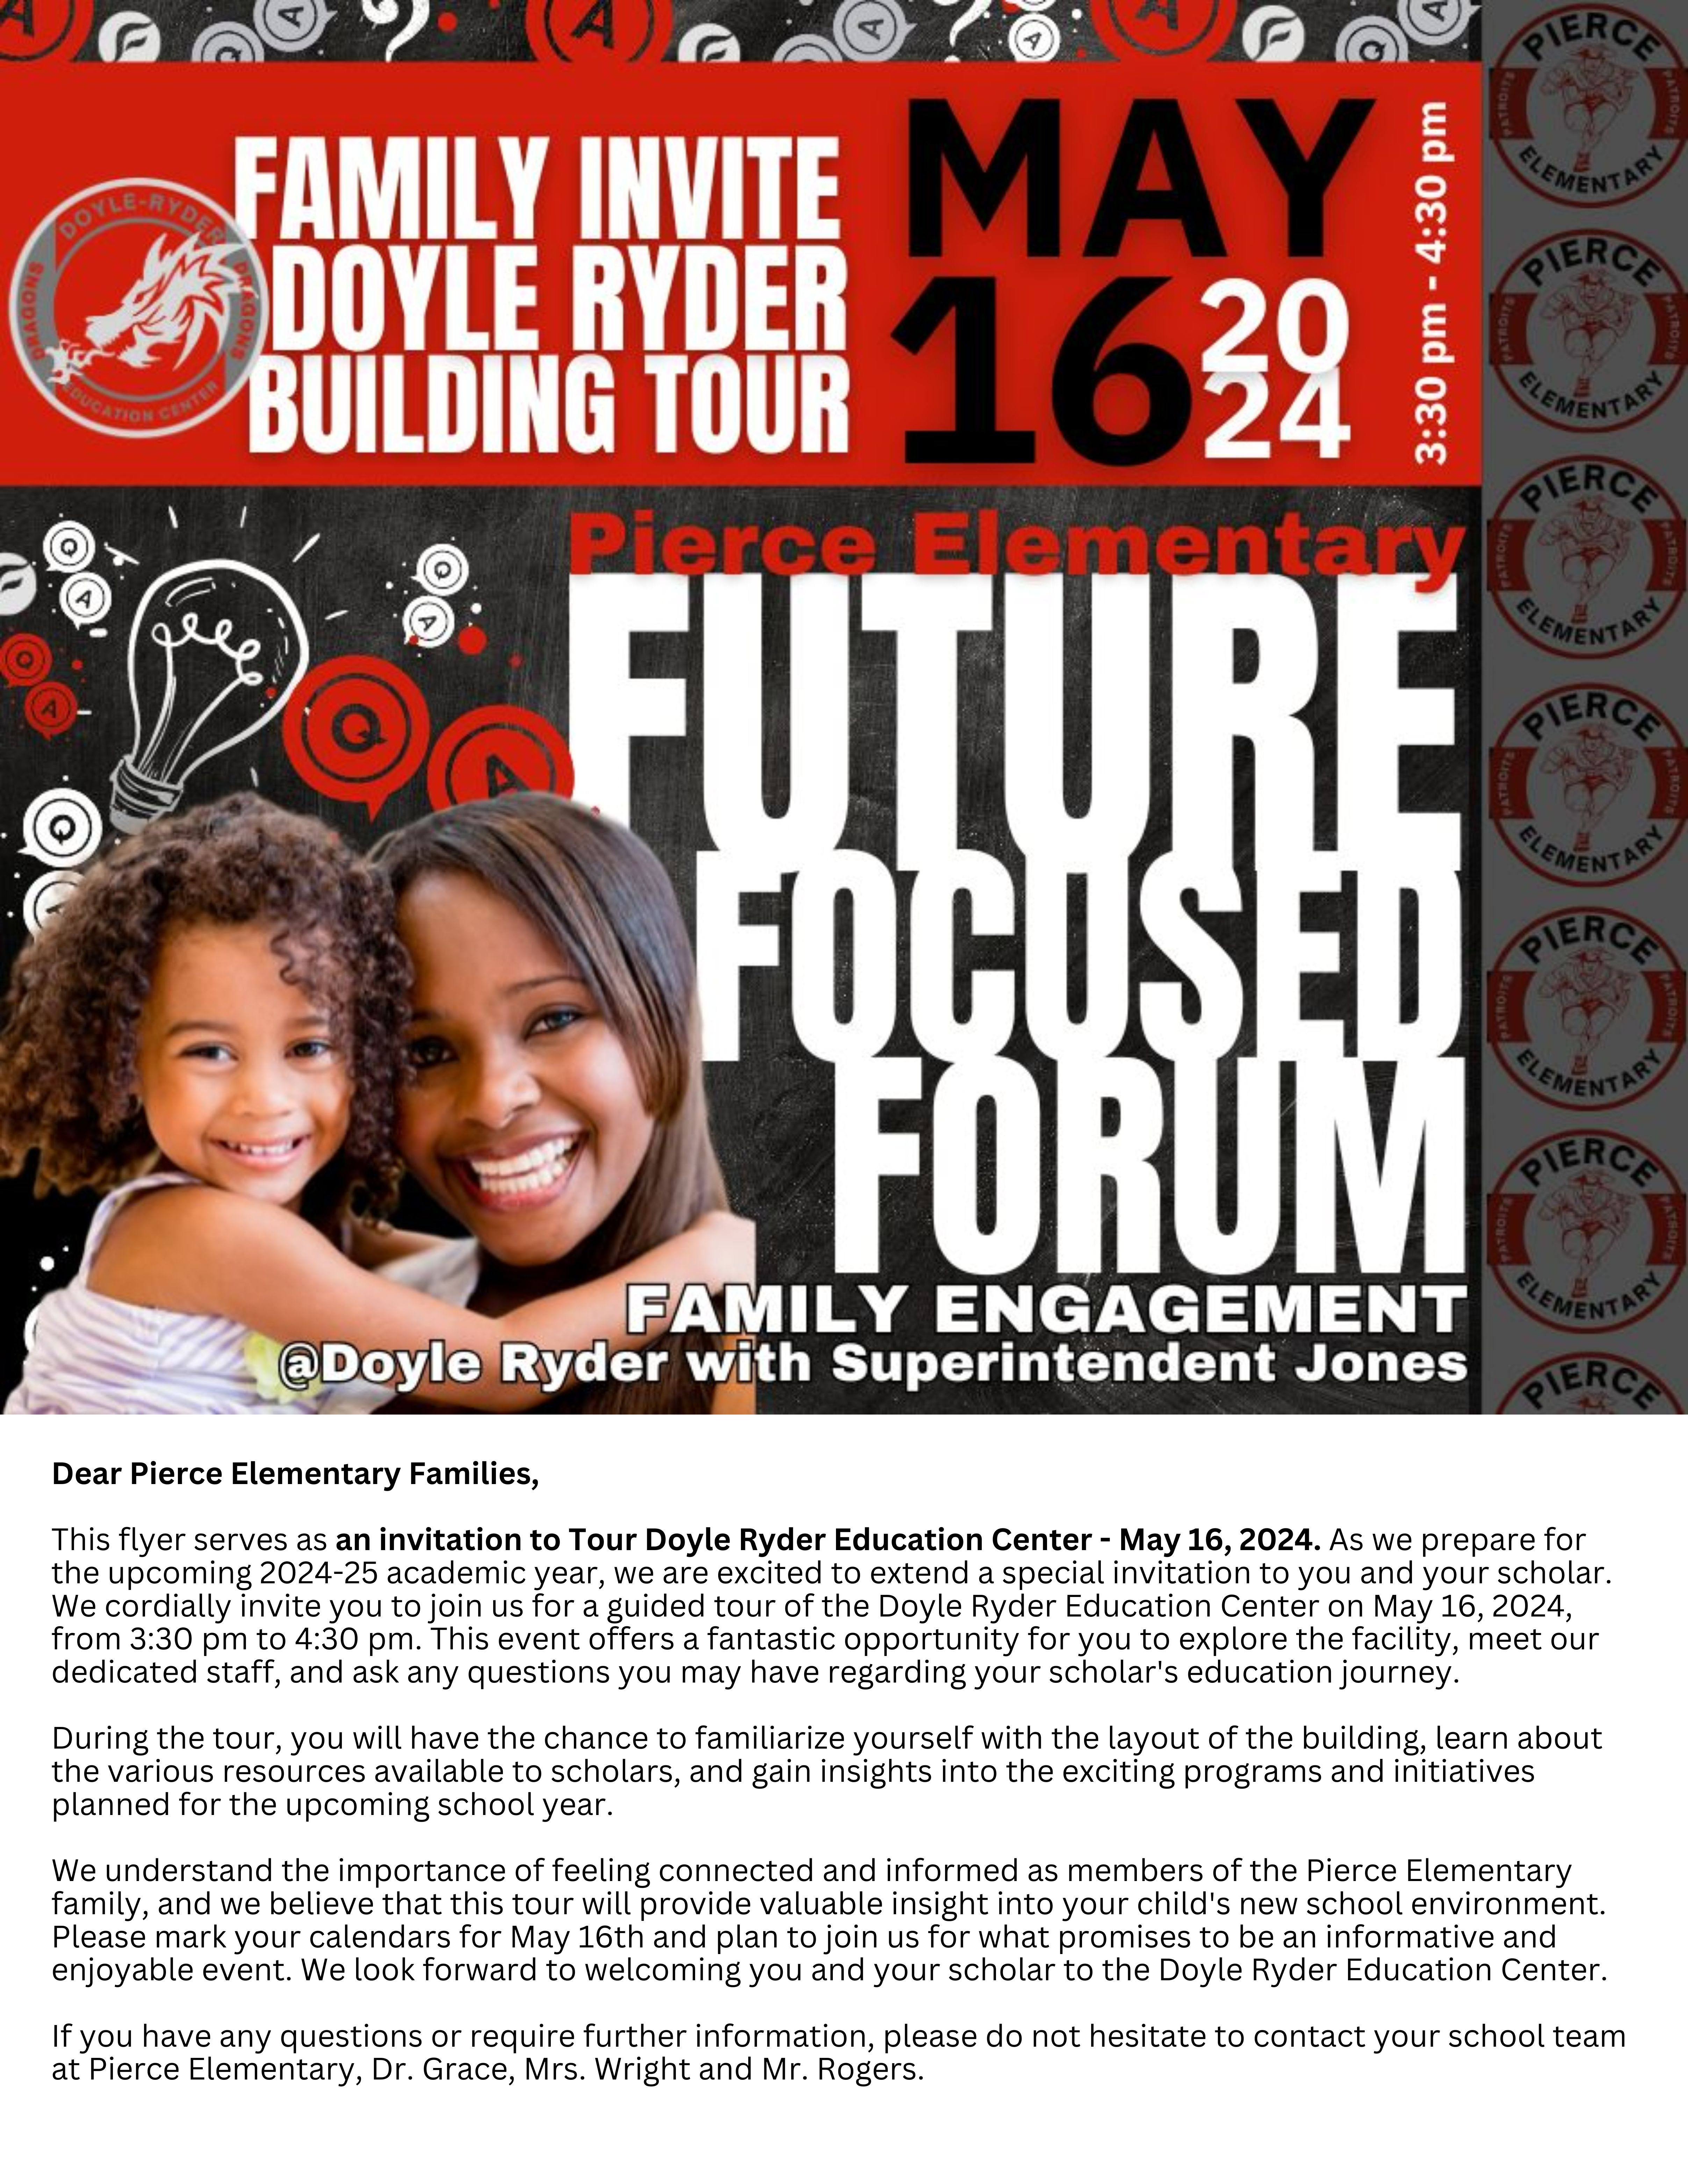 Future Focused Forum at Pierce 5-16-24 at 3:30 pm